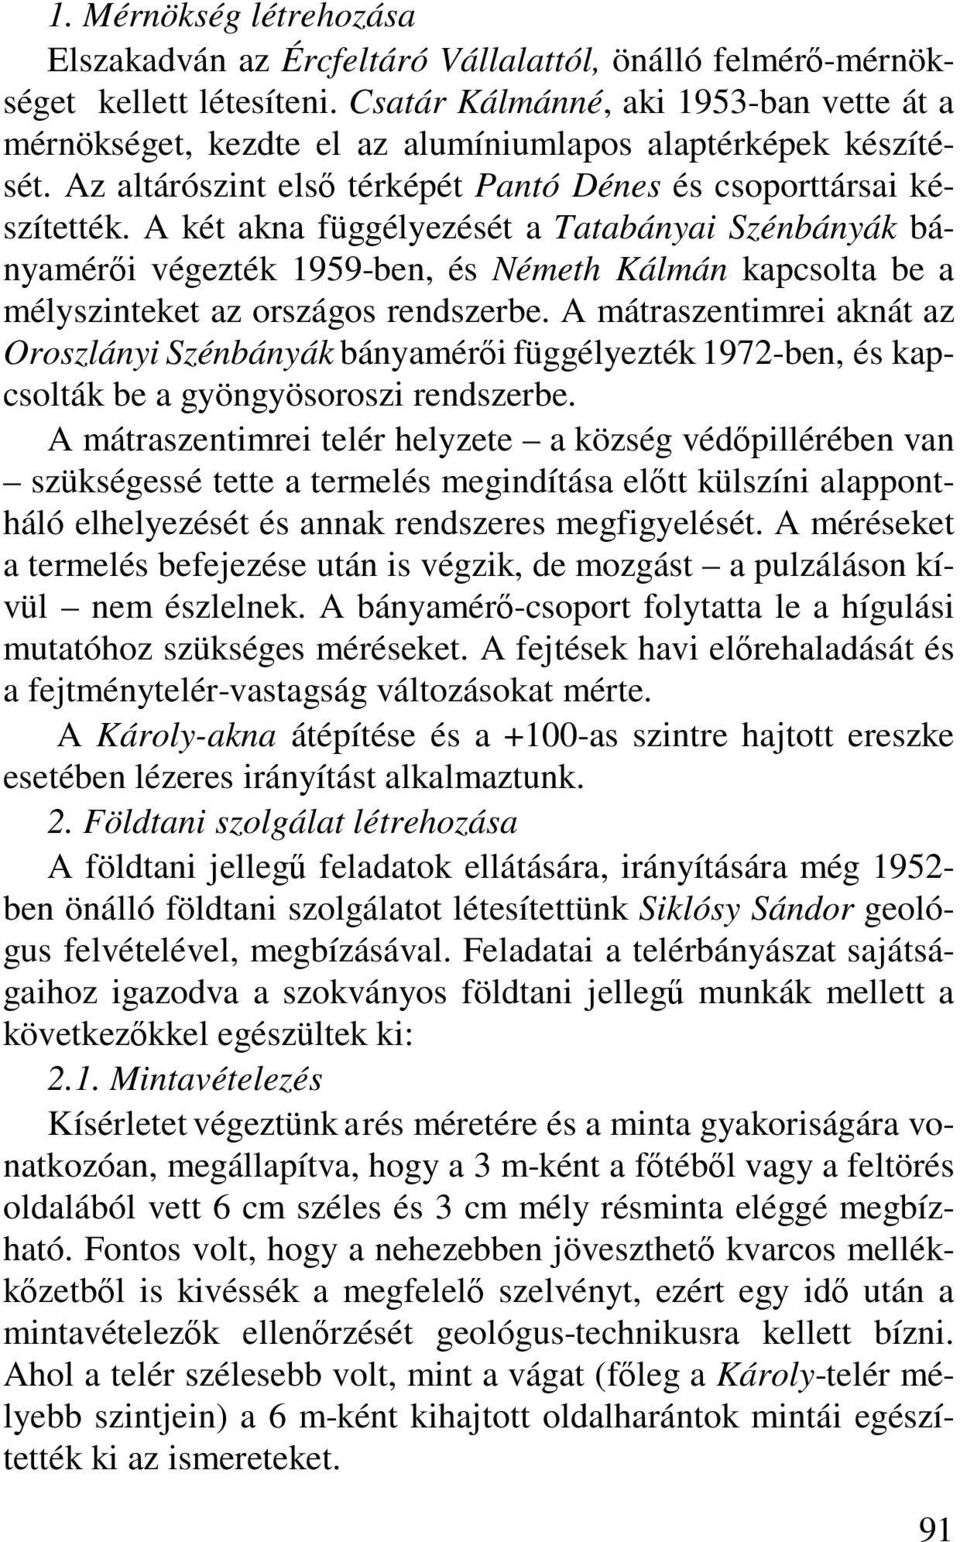 A két akna függélyezését a Tatabányai Szénbányák bányamérői végezték 1959-ben, és Németh Kálmán kapcsolta be a mélyszinteket az országos rendszerbe.